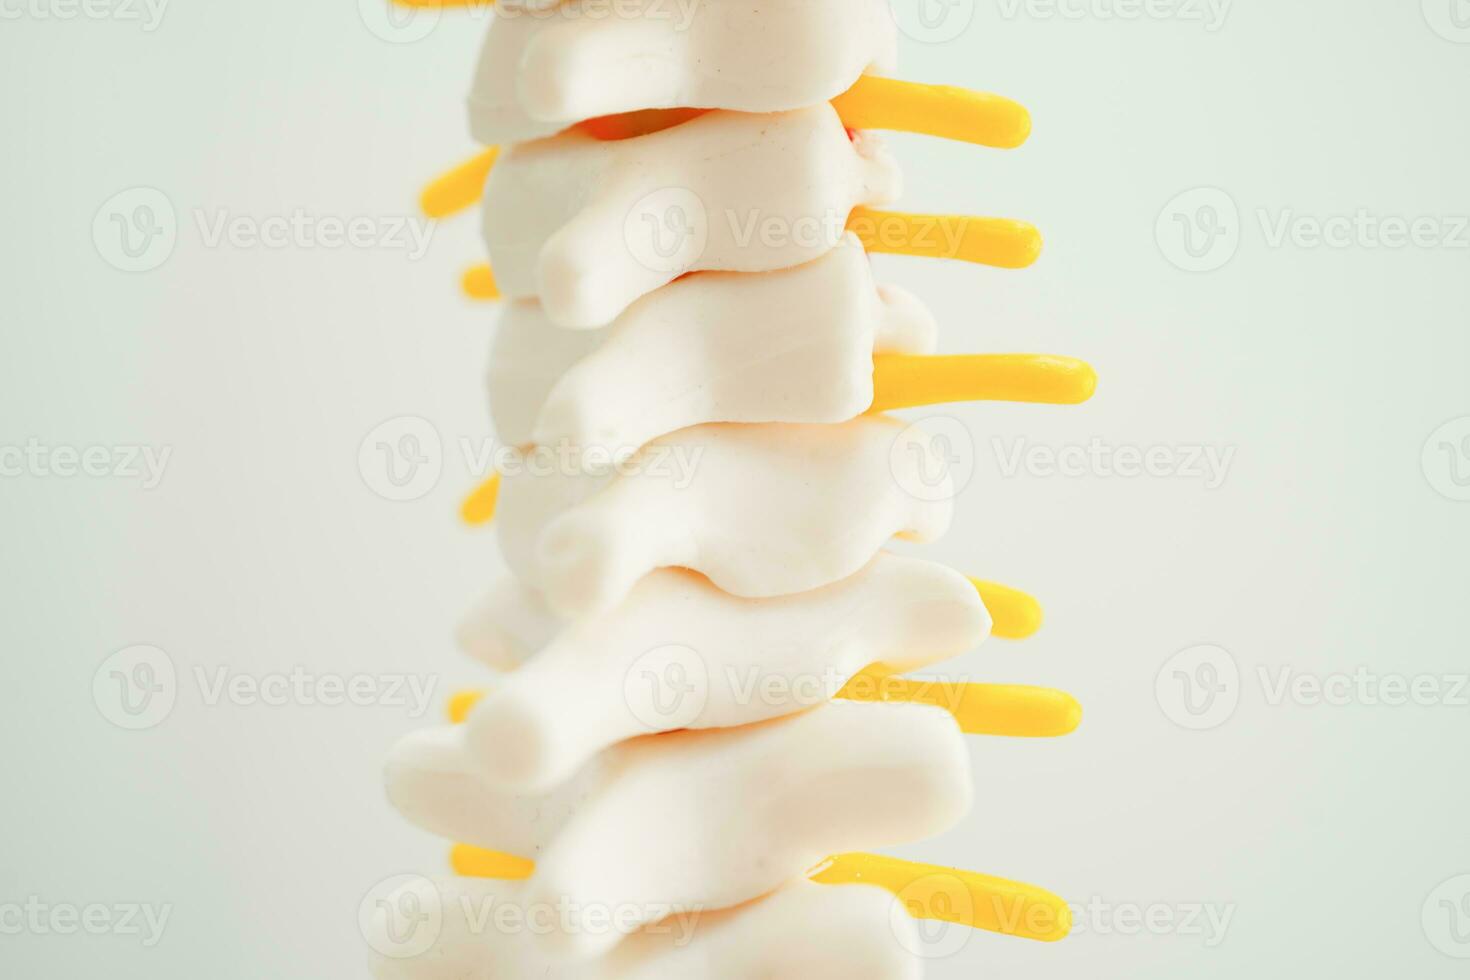 spinal zenuw en bot, lumbaal wervelkolom verplaatst hernia schijf fragment, model- voor behandeling medisch in de orthopedische afdeling. foto